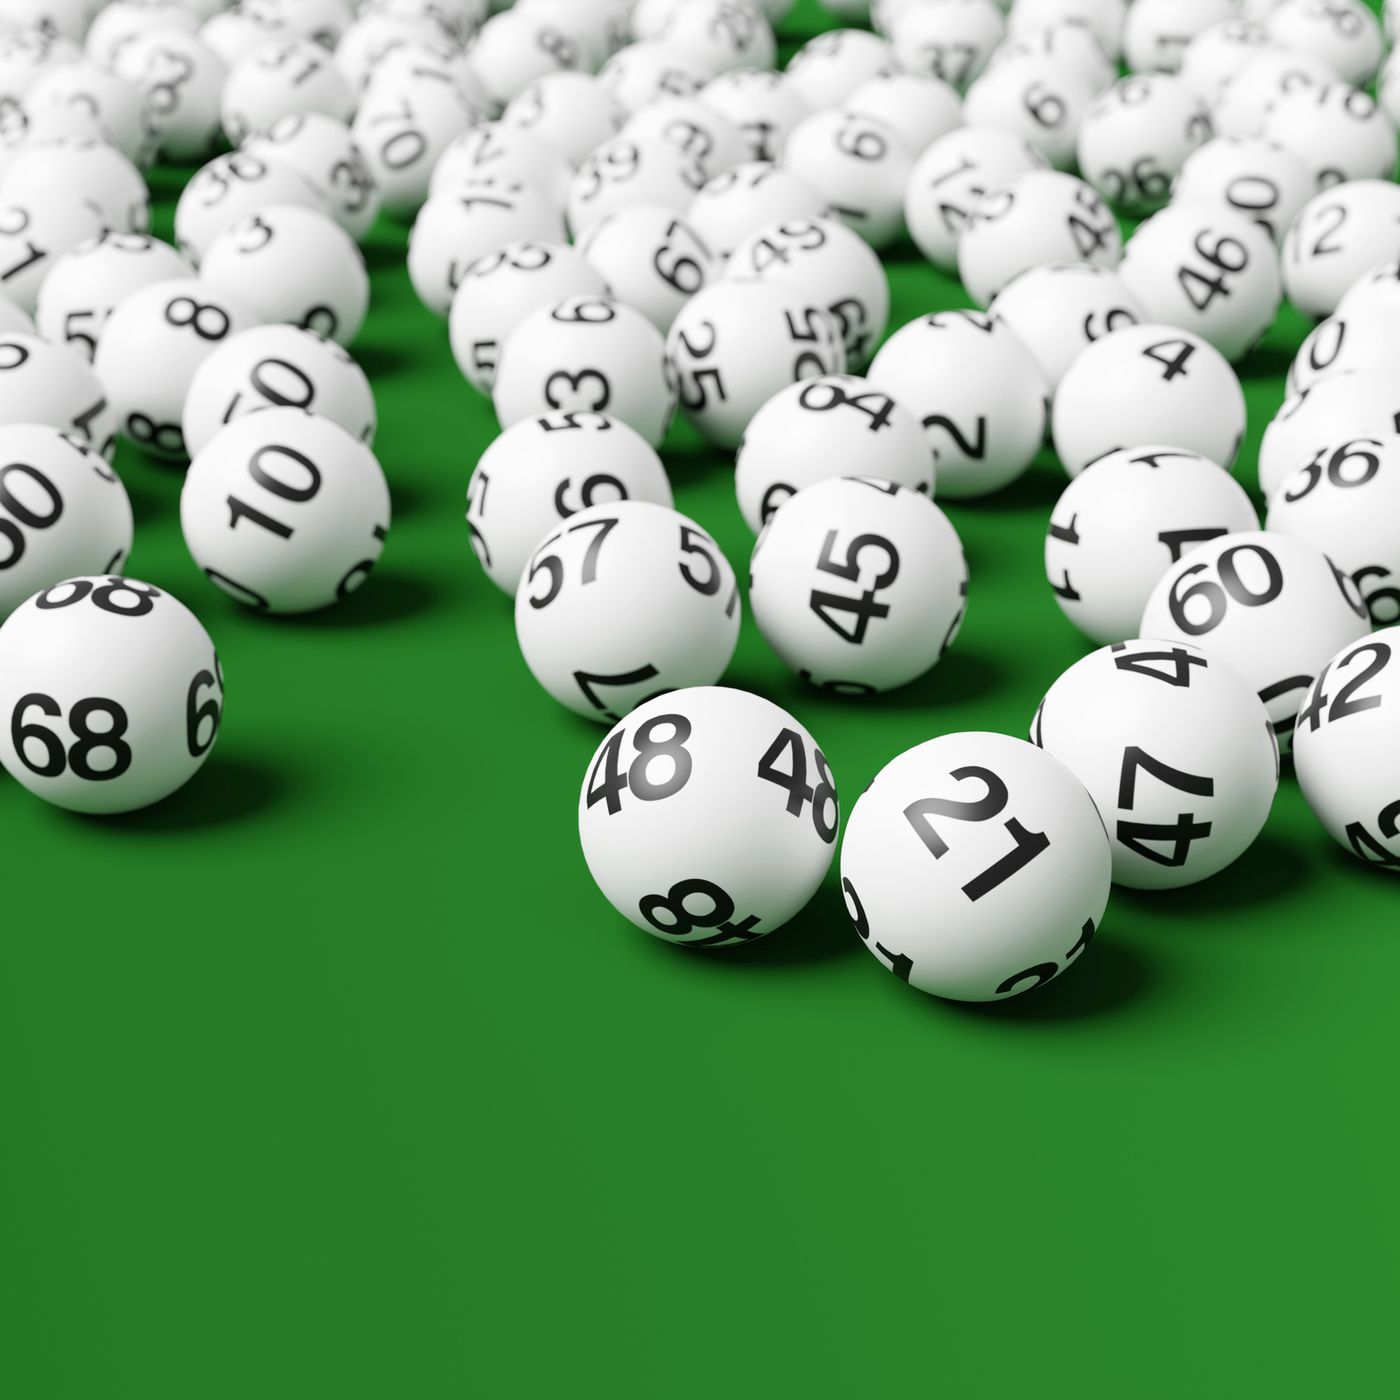 Vwin Lottery: Đặt cược vào số may mắn, hãy để giấc mơ trở thành hiện thực